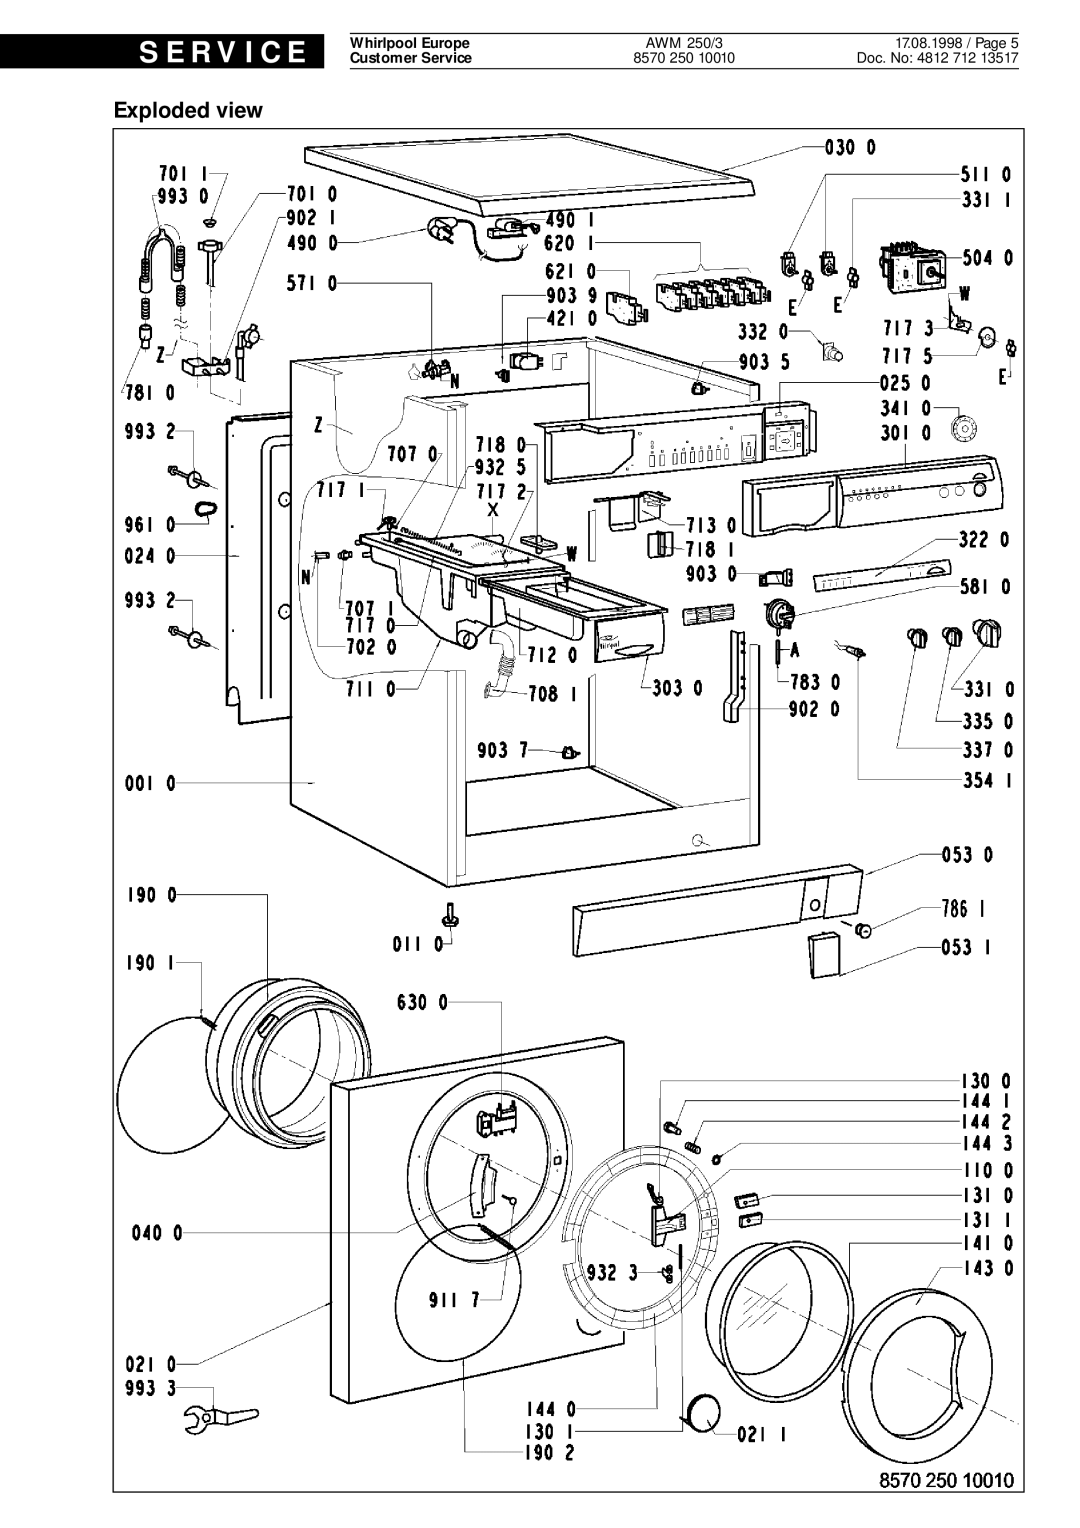 Whirlpool AWM 250 3 service manual Exploded view, S E R V I C E, Doc. No 